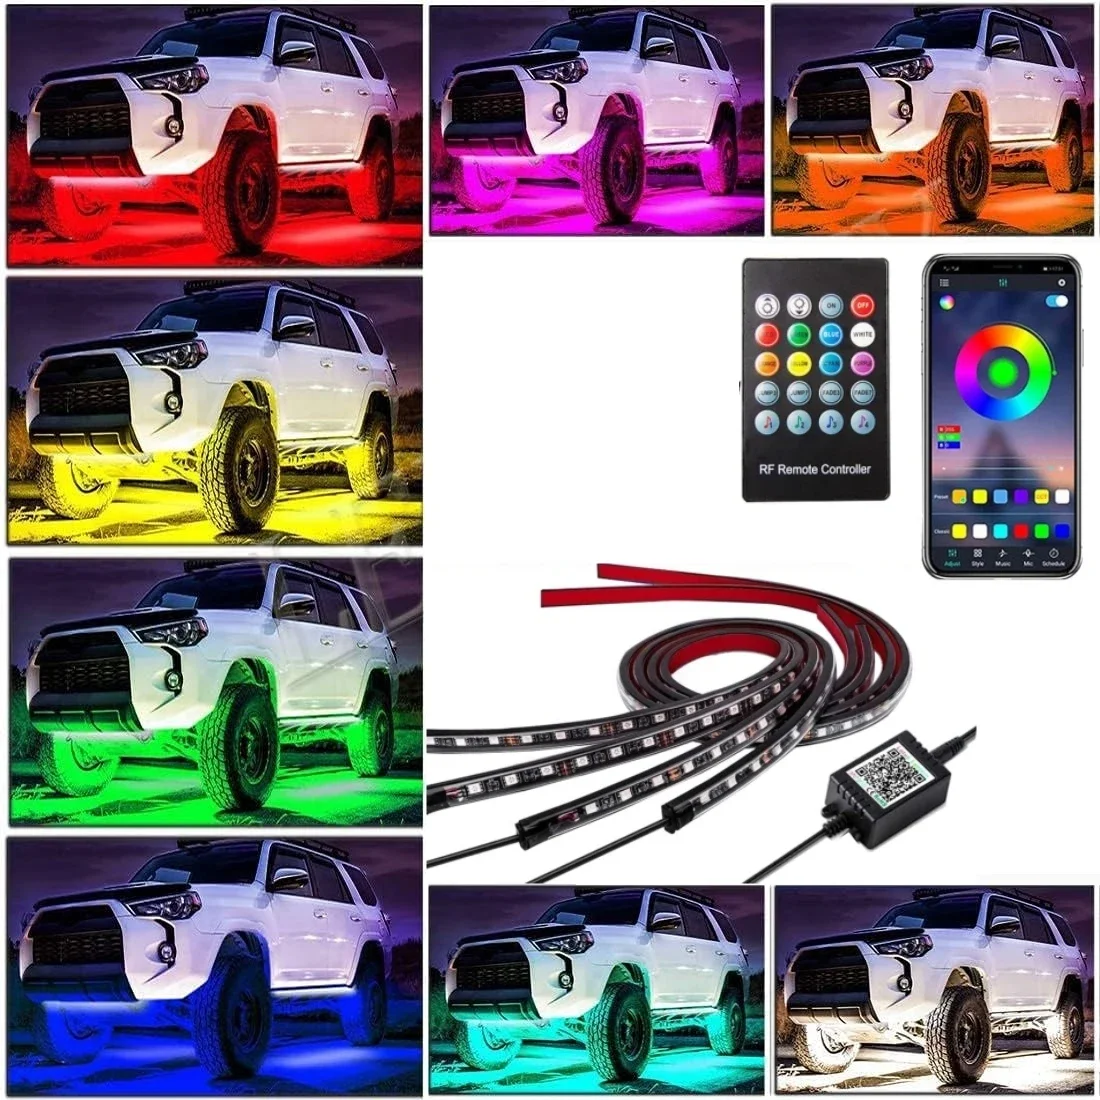 

Автомобильная подсветка, неоновая Светодиодная лента, гибкая светодиодная лента для нижнего корпуса, дистанционное управление через приложение, RGB, цвет мечты, автомобильная декоративная лампа для создания окружающей атмосферы